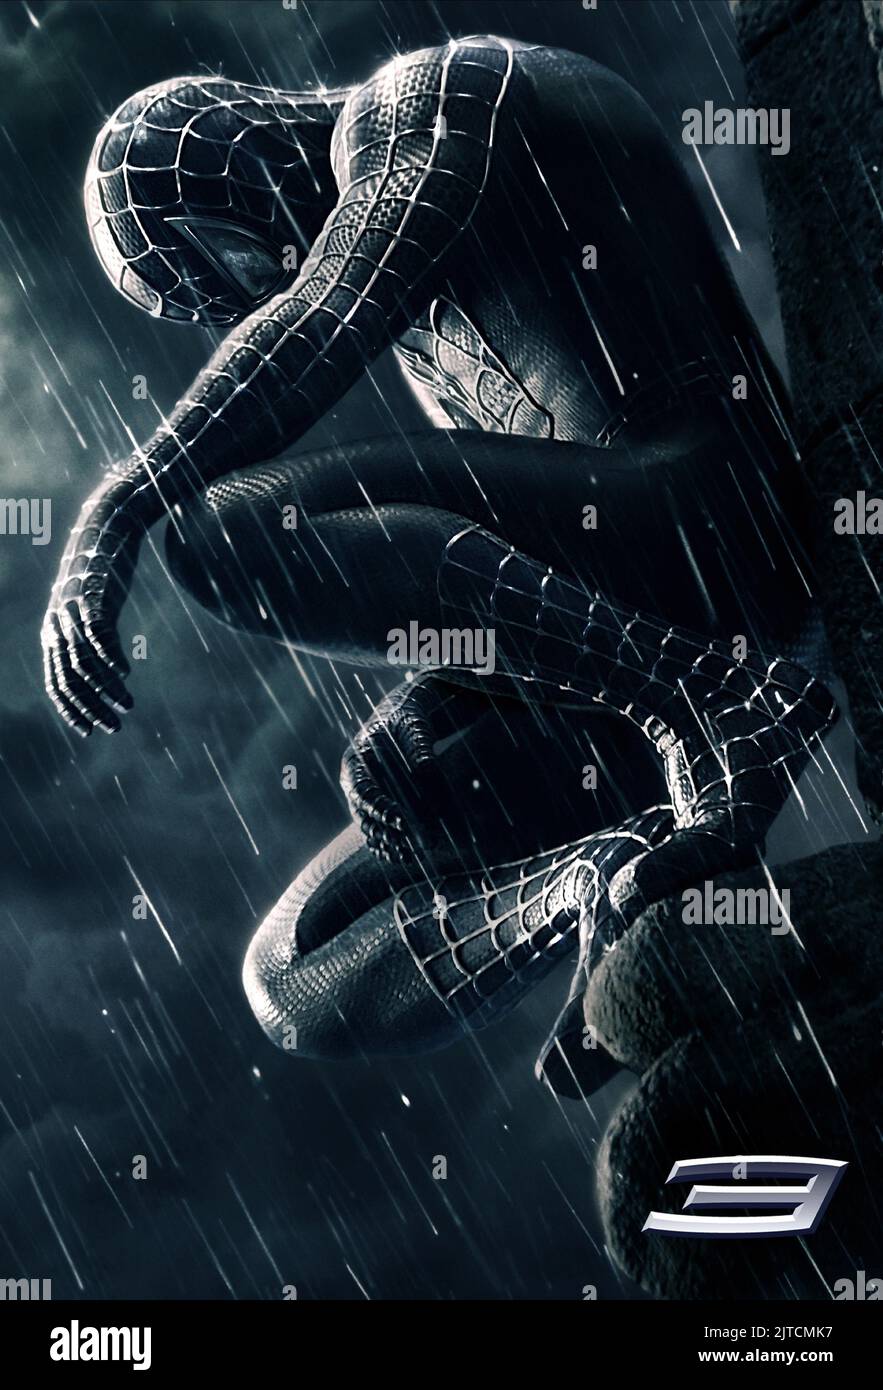 L'affiche de film, SPIDER-MAN 3, 2007 Banque D'Images